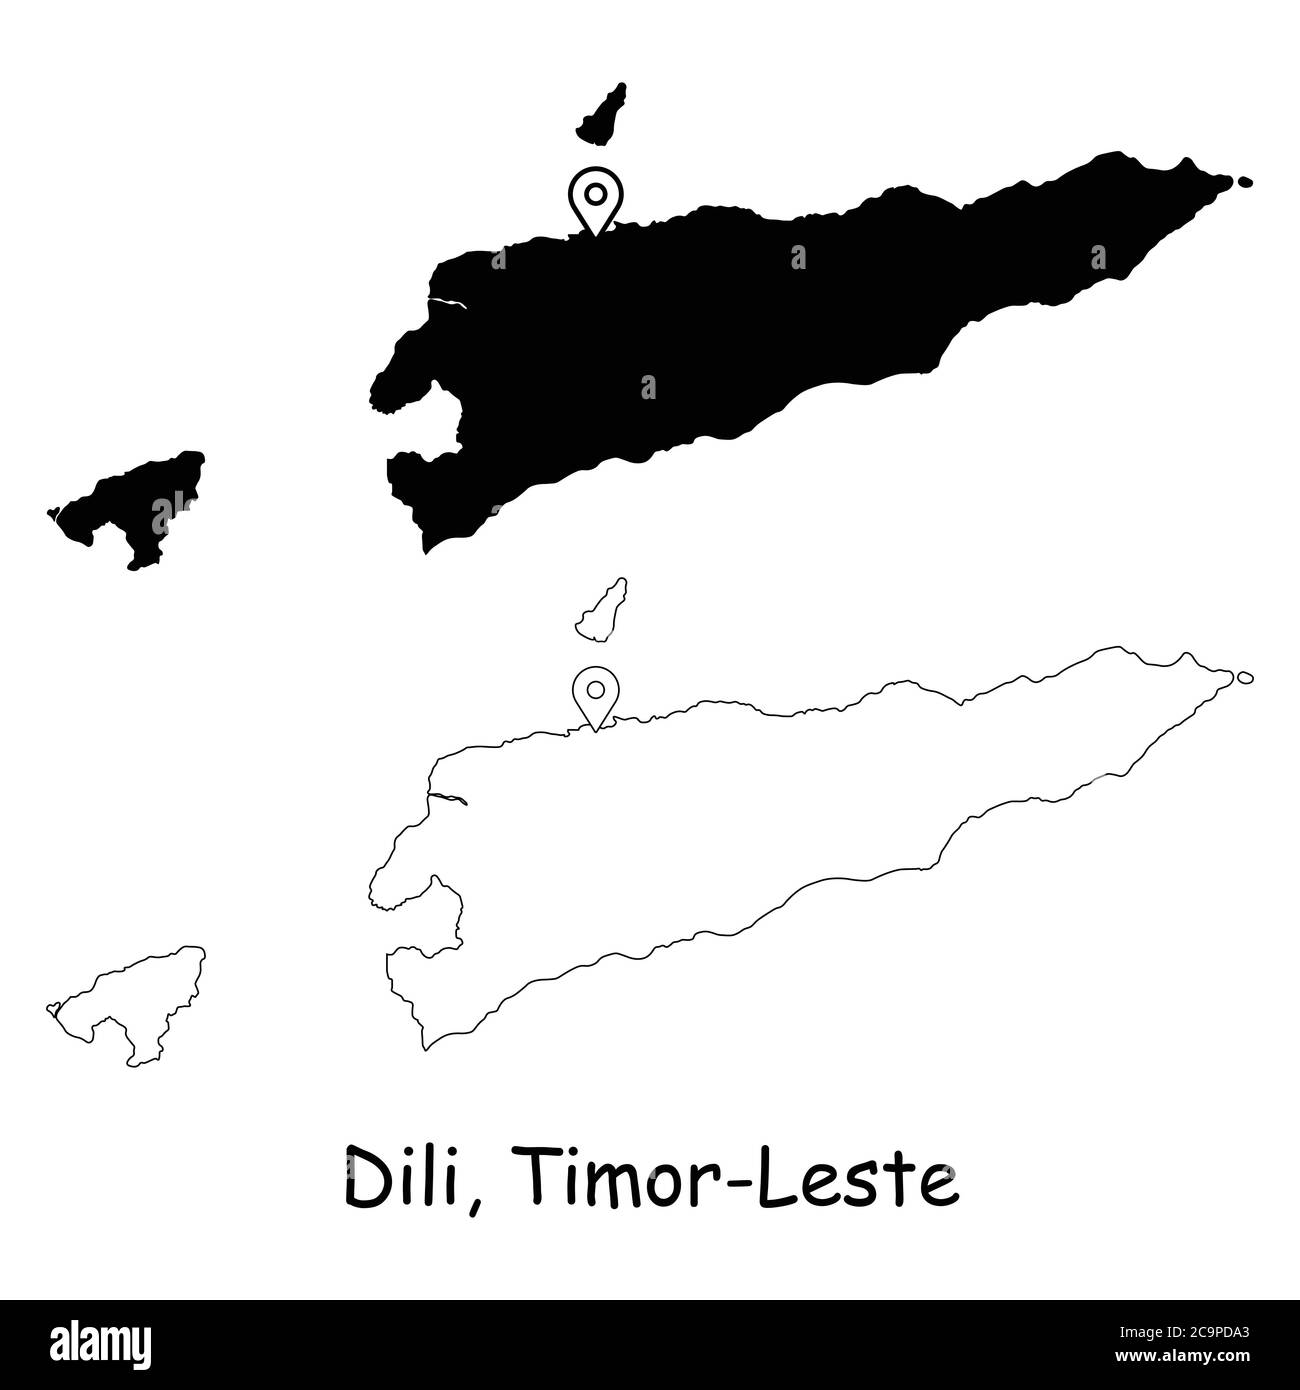 Dili, Timor-Leste. Carte détaillée du pays avec broche d'emplacement sur Capital City. Cartes silhouettes et vectorielles noires isolées sur fond blanc. Vecteur EPS Illustration de Vecteur